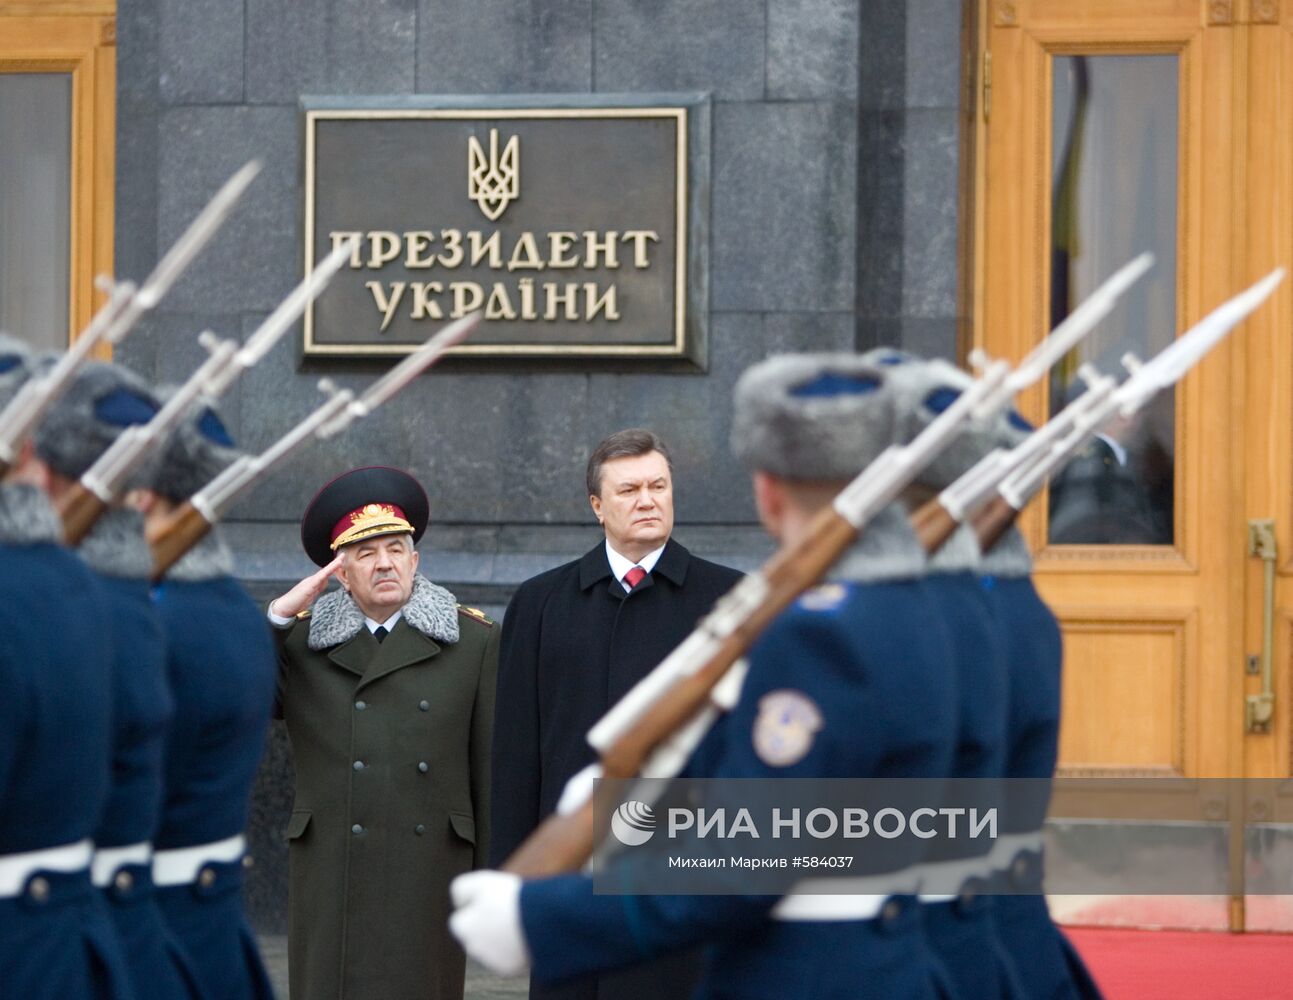 Иван Свида, Виктор Янукович